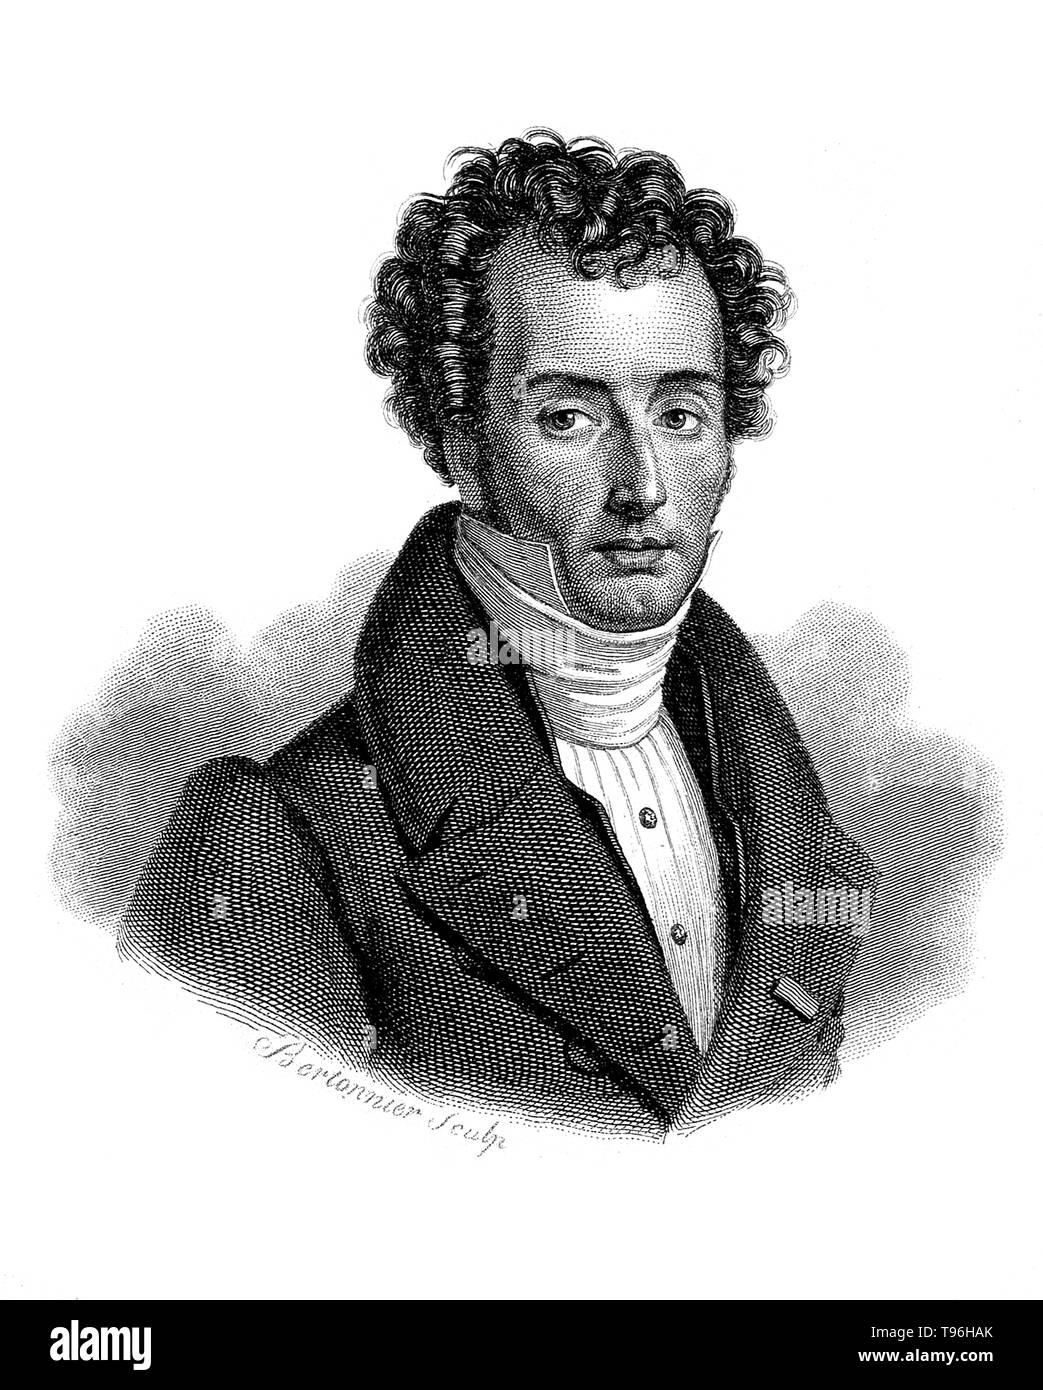 Mathieu Joseph Bonaventure Orfila (le 24 avril 1787 - 12 mars 1853) était un chimiste et toxicologue français né, le fondateur de la science de la toxicologie. Dans le temps de l'Orfila le principal type de poison utilisé était l'arsenic, mais il n'y avait pas de moyens fiables d'essai pour sa présence. Orfila créé de nouvelles techniques et affiné les techniques existantes dans son premier traité, traite des poisons, accroît considérablement la précision. Il est mort en 1853 à l'âge de 65 ans. Gravure en ligne par P. F. Bertonnier, sans date. Banque D'Images